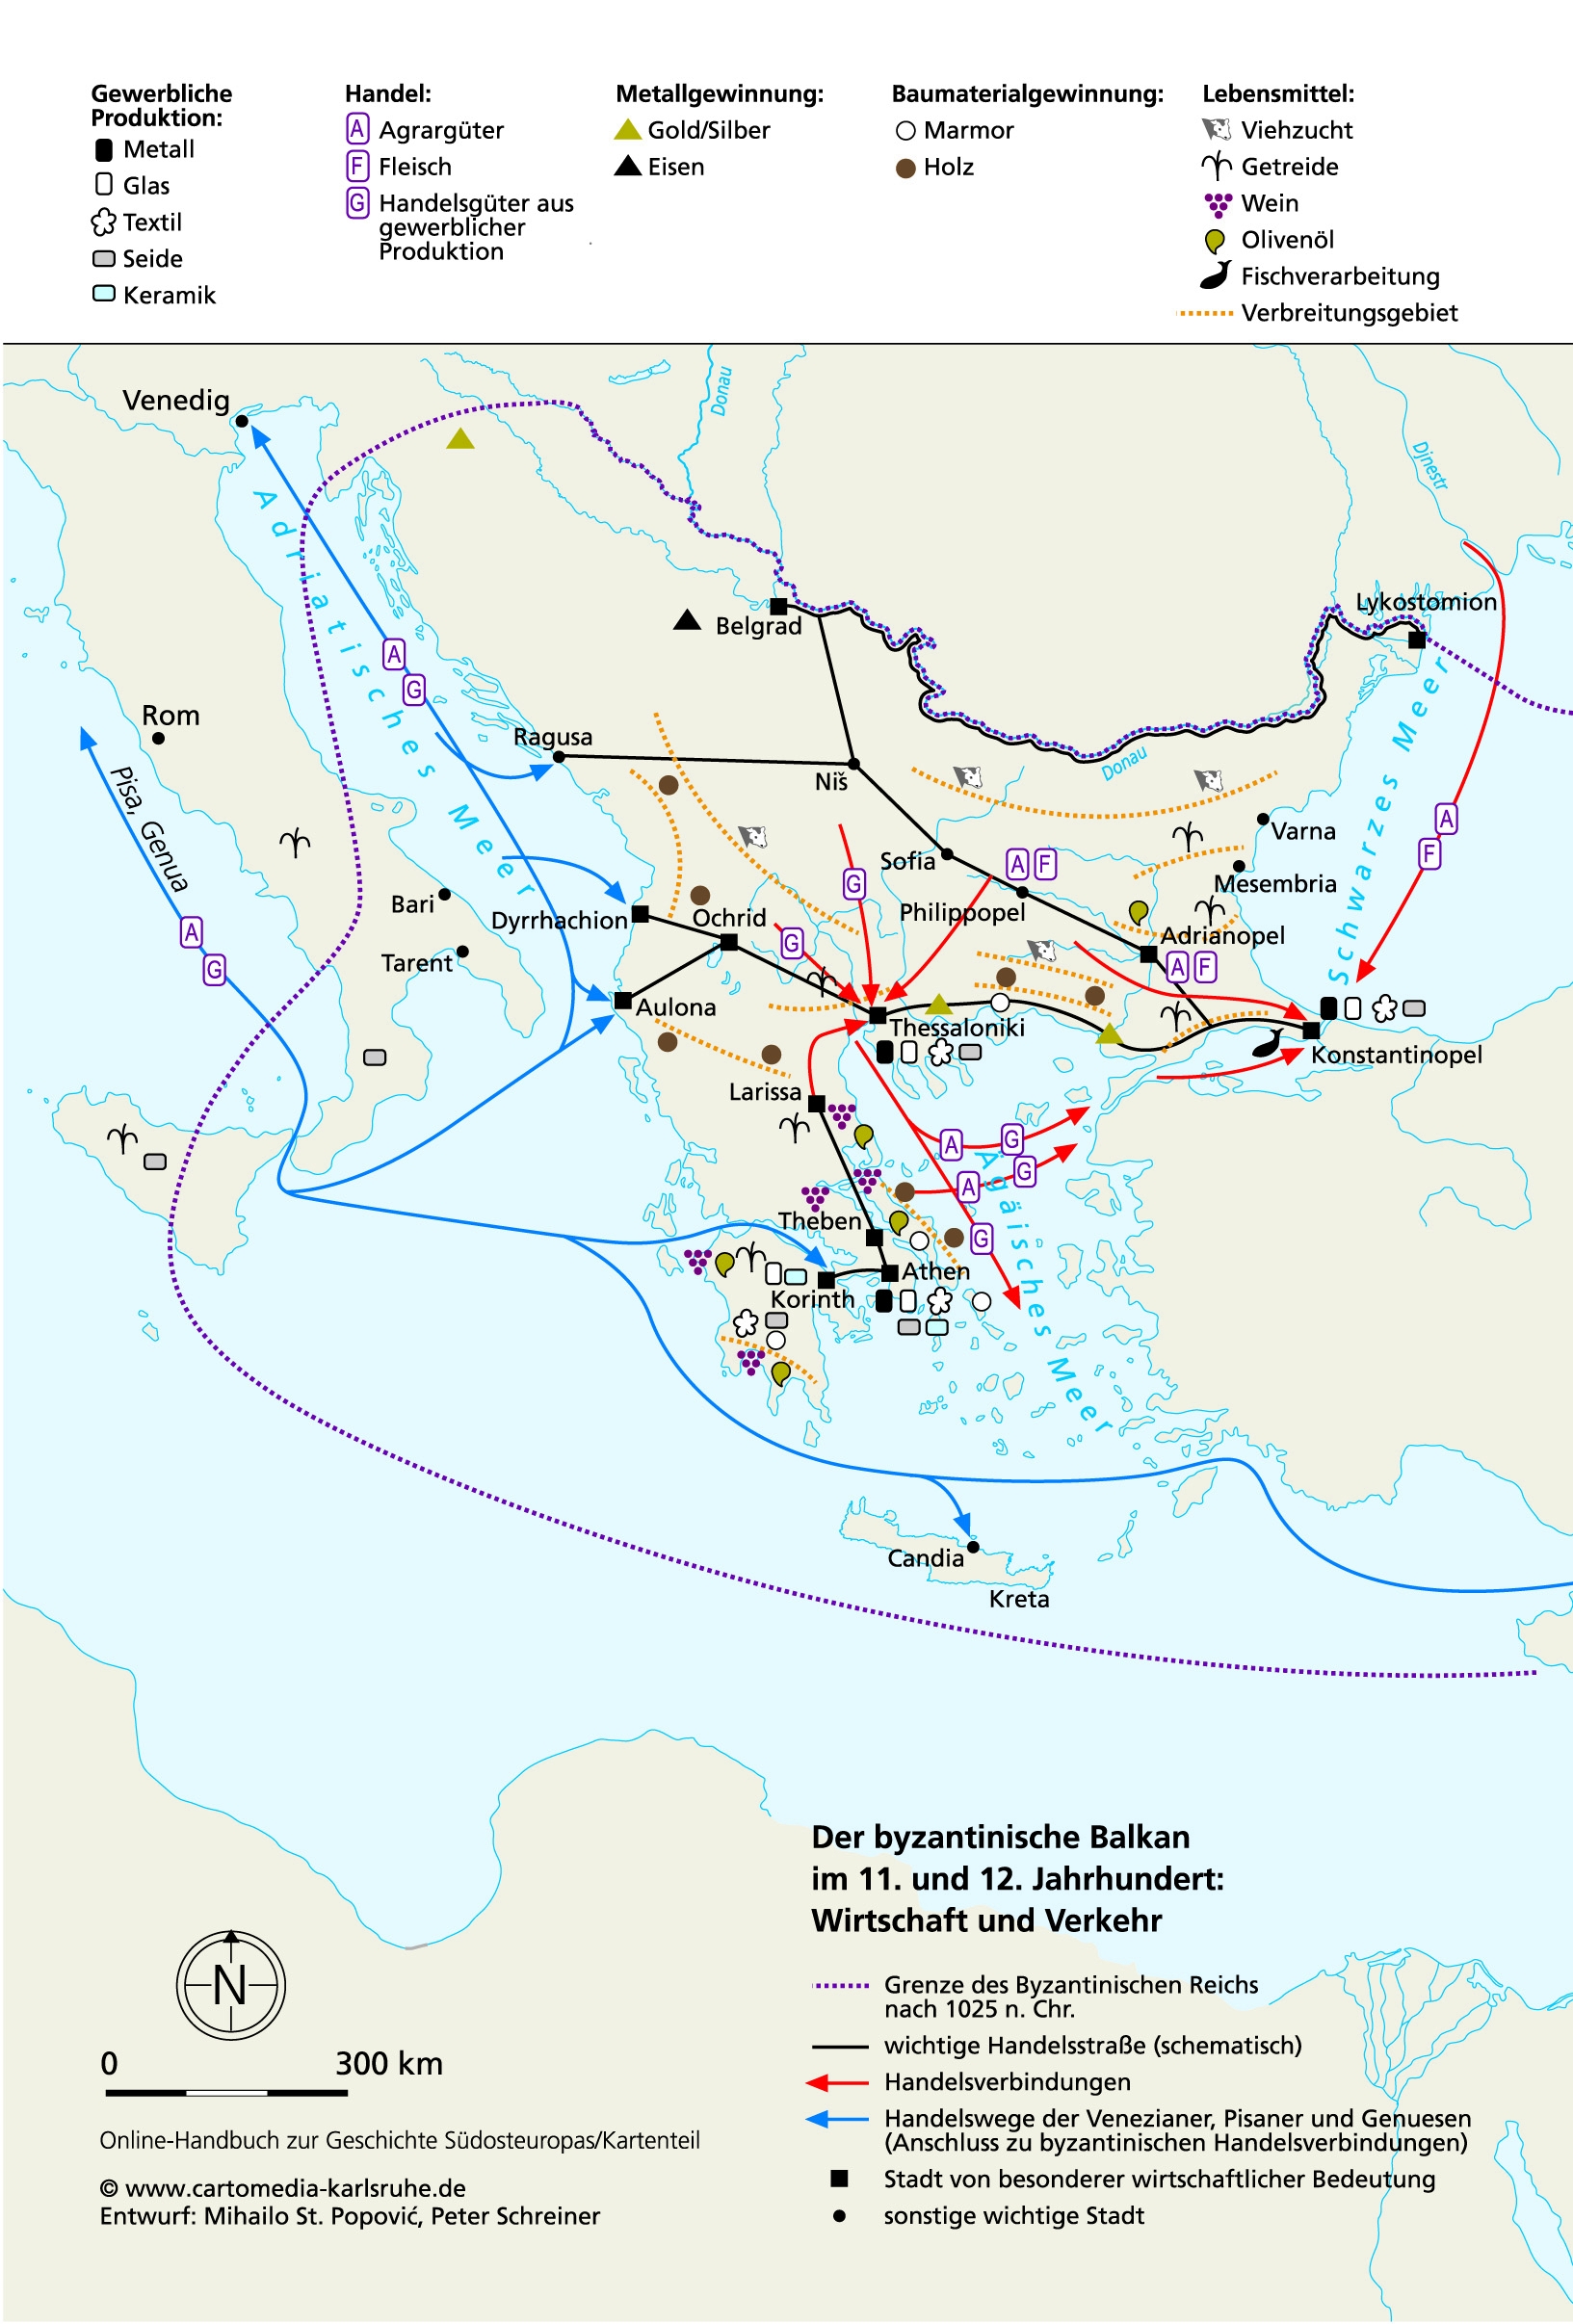 Der byzantinische Balkan im 11. und 12. Jahrhundert: Wirtschaft und Verkehr